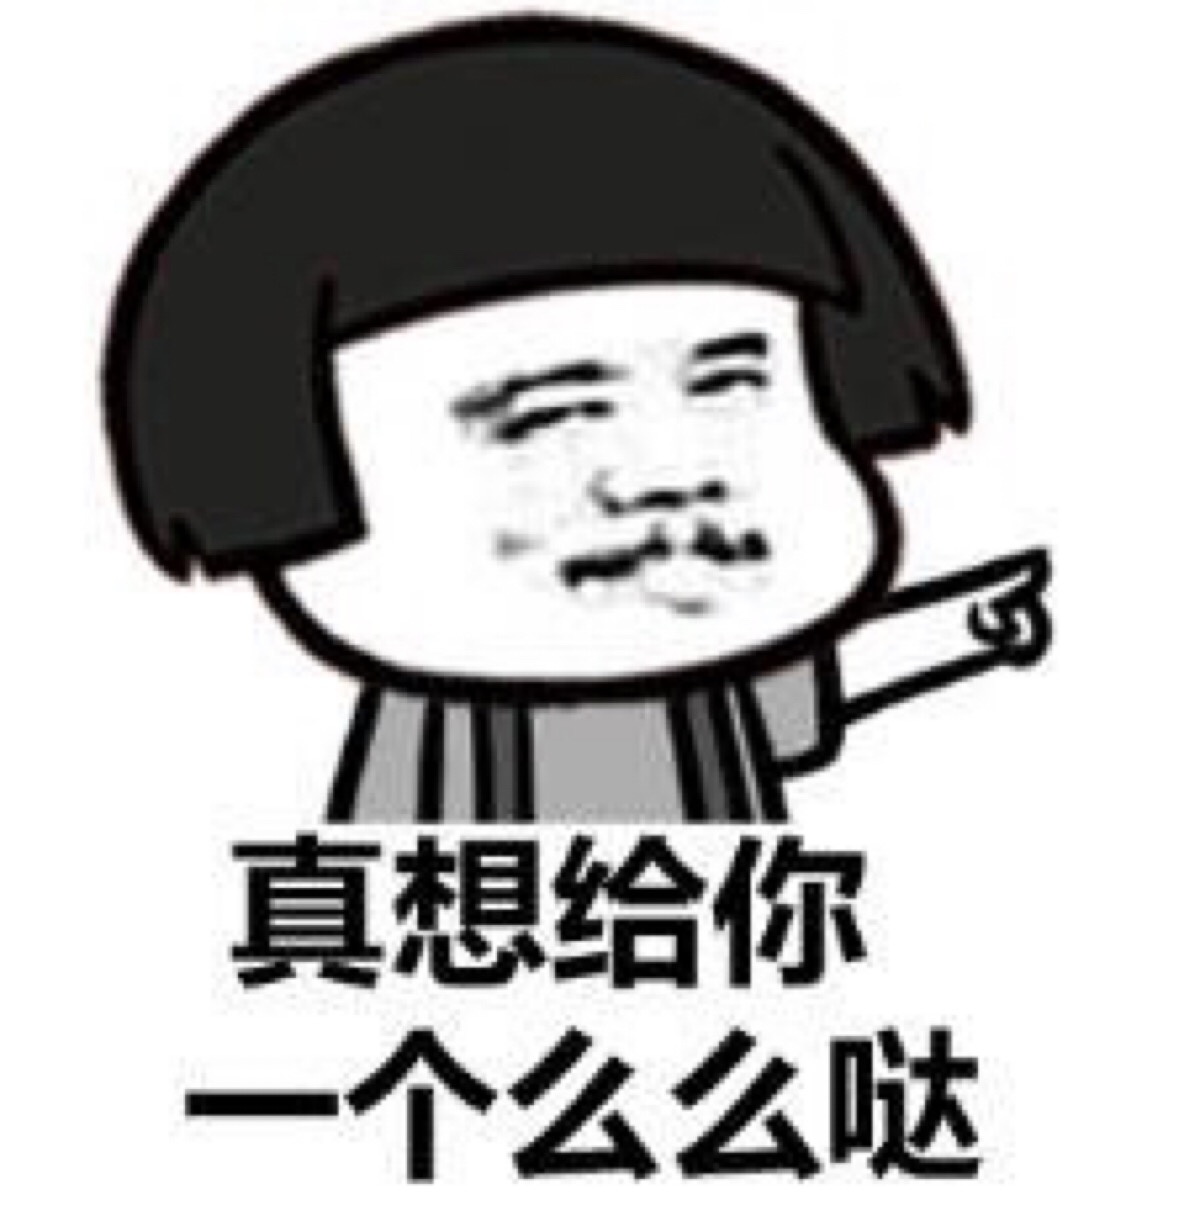 大笑emoji,eji大图,eji_大山谷图库